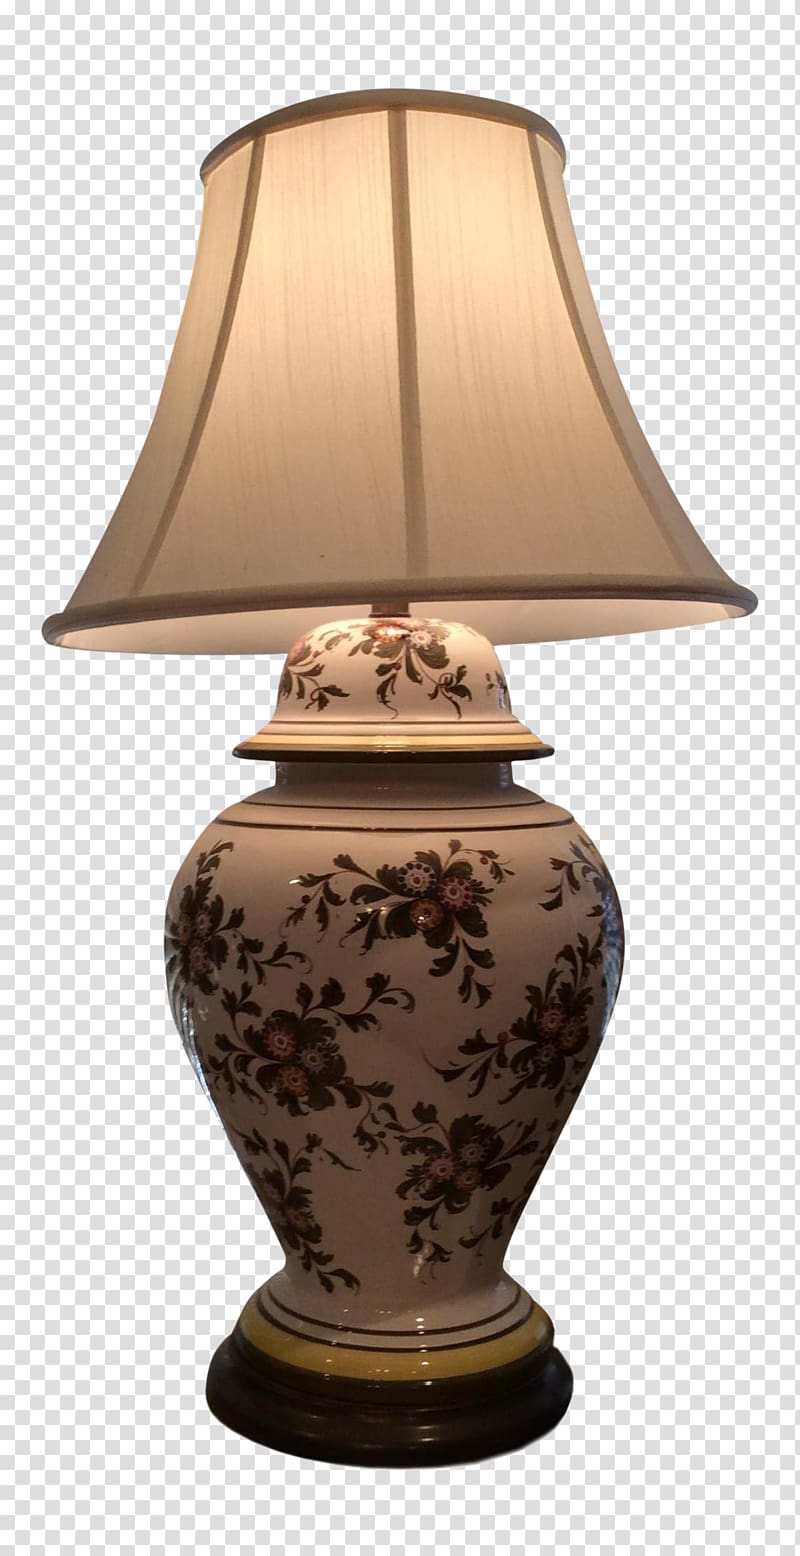 Ceramic Vase Product design Urn, ginger jar lamps for bedroom nightstands transparent background PNG clipart